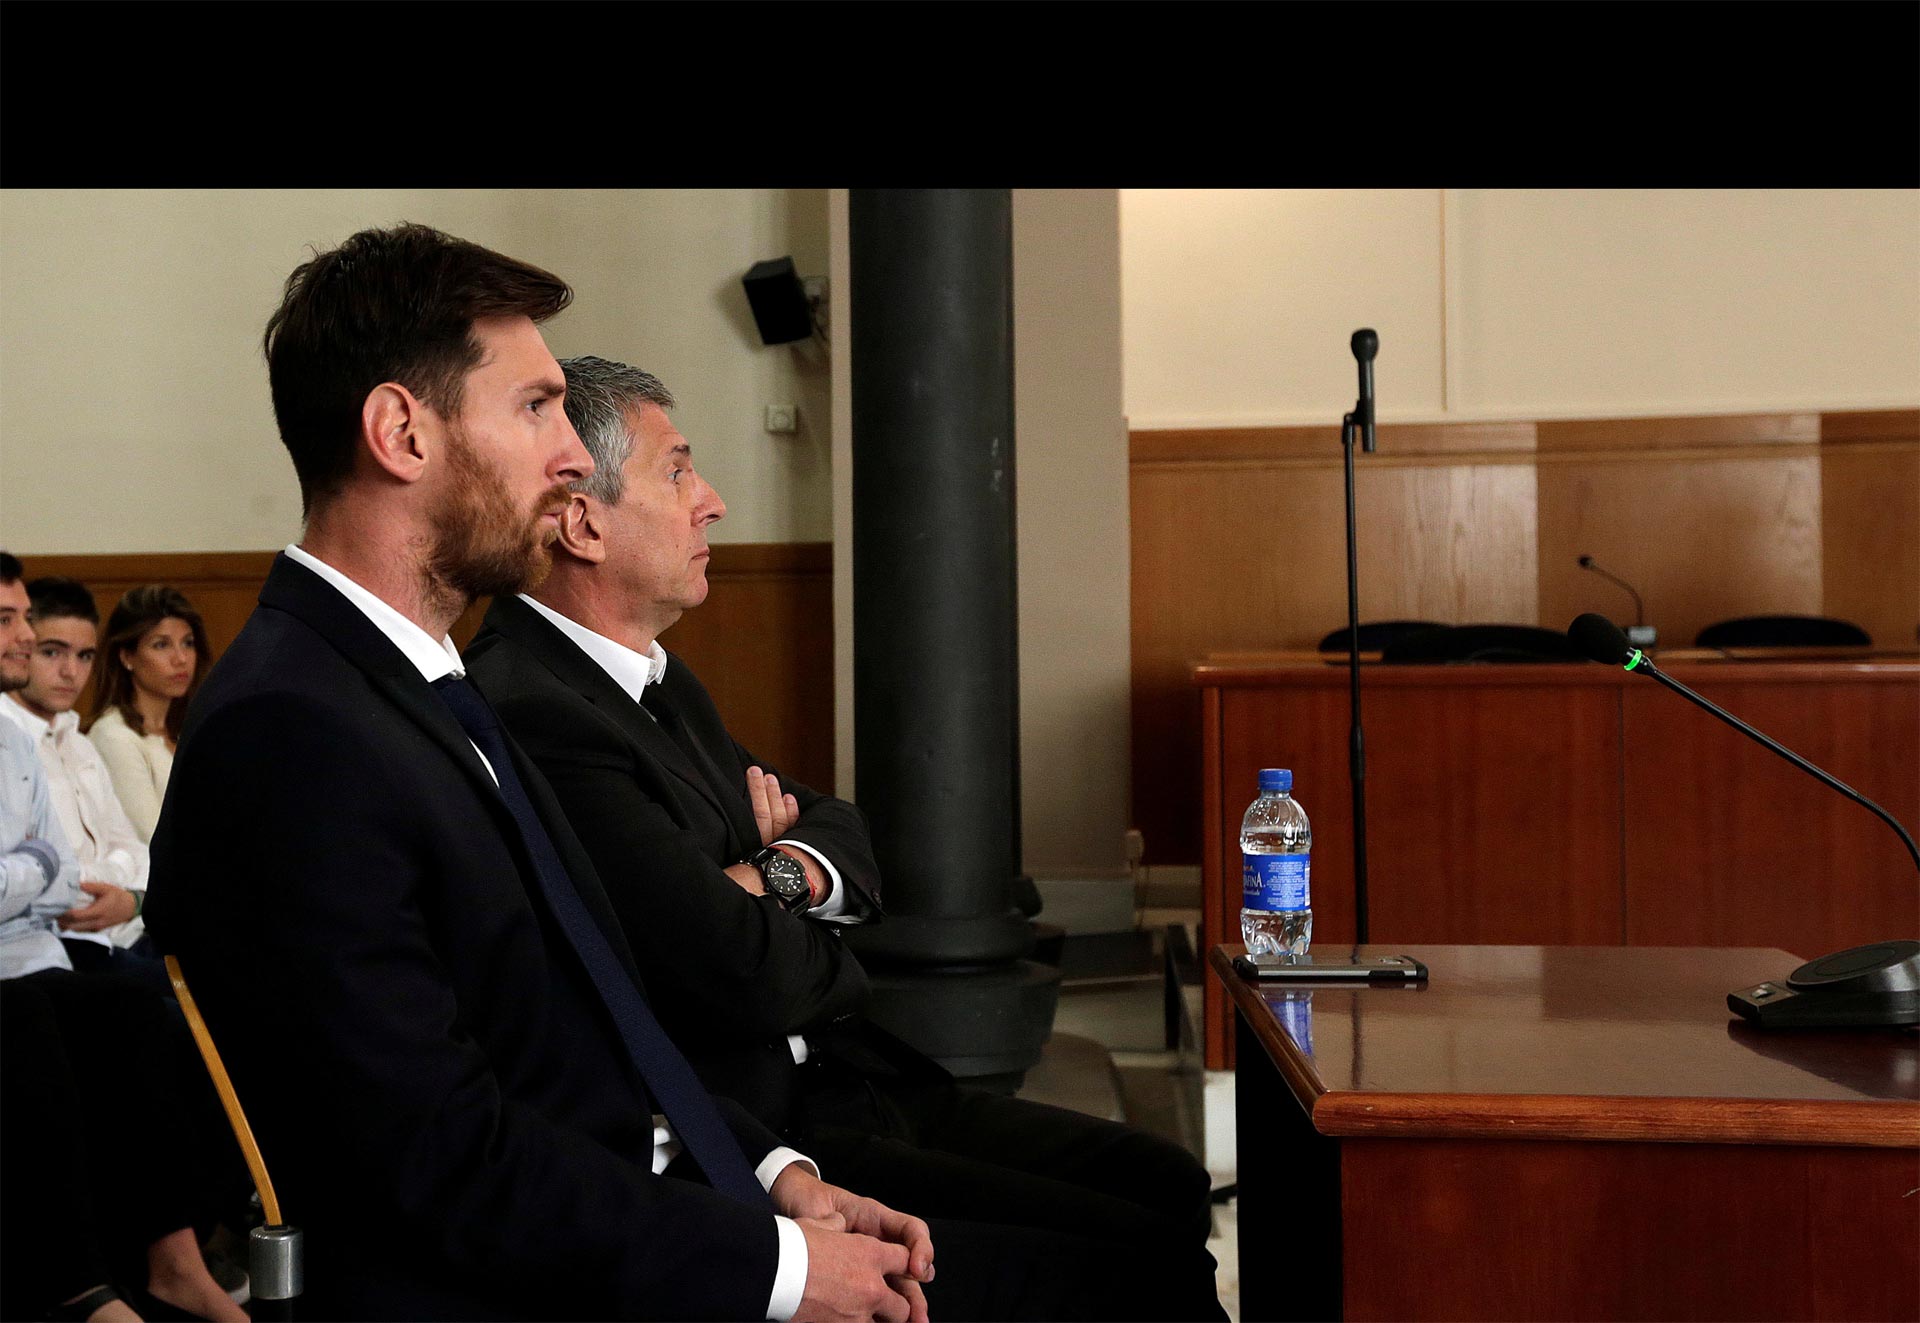 El futbolista argentino explicó en el tribunal que él delegaba la gestión de su dinero a su padre